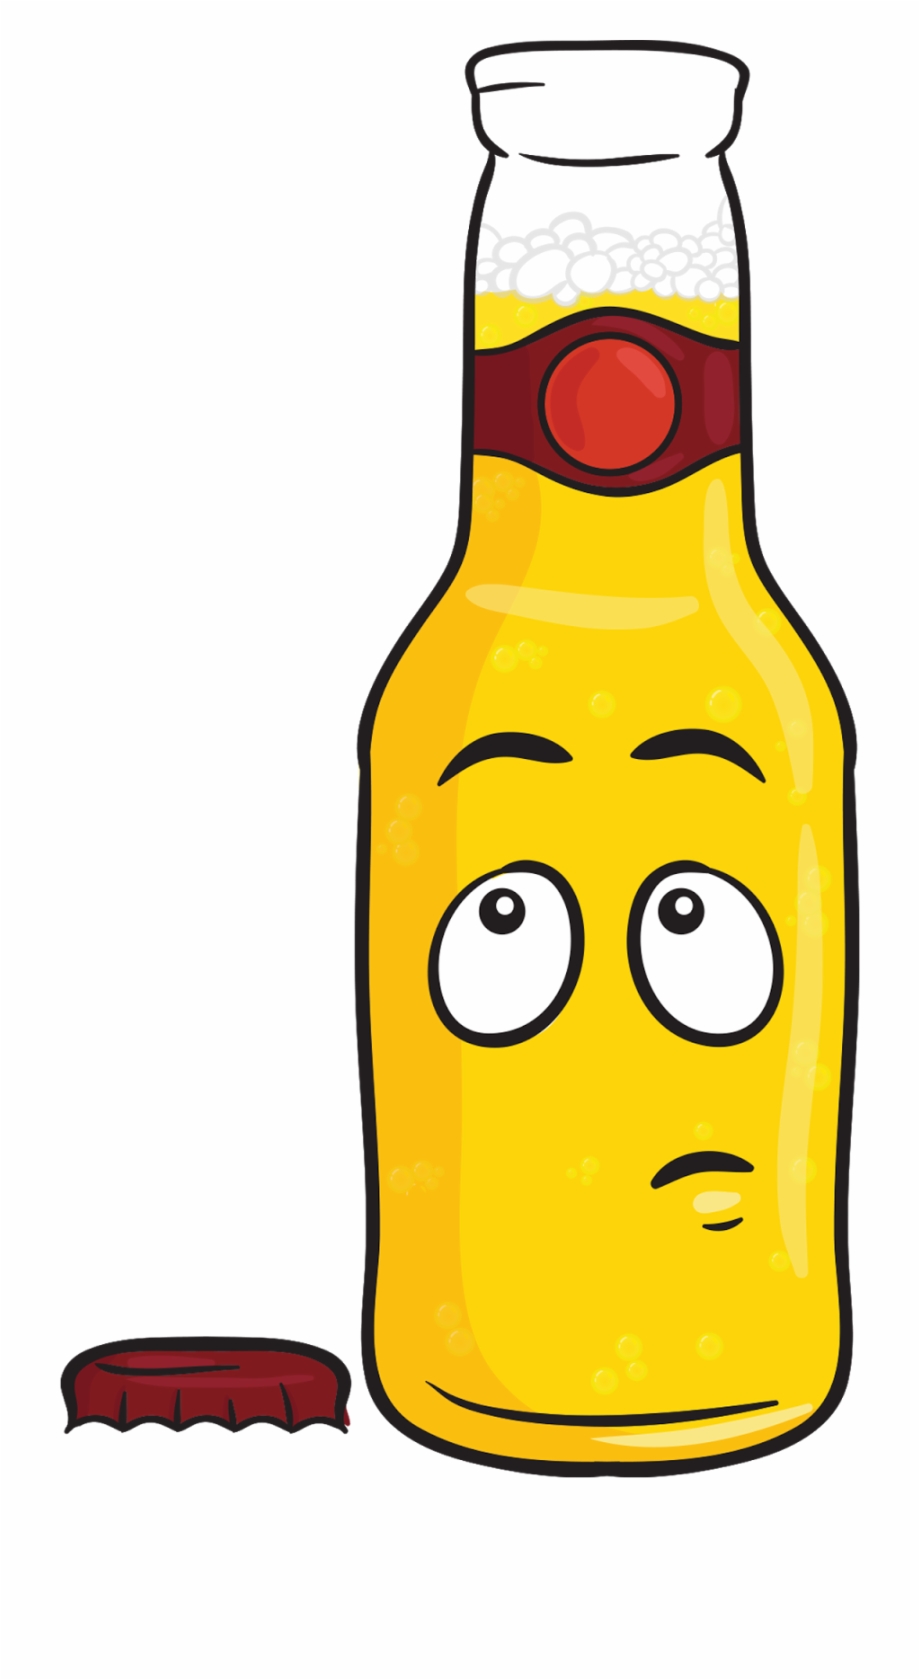 Friday November 16 Cartoon Beer Bottle Transparent